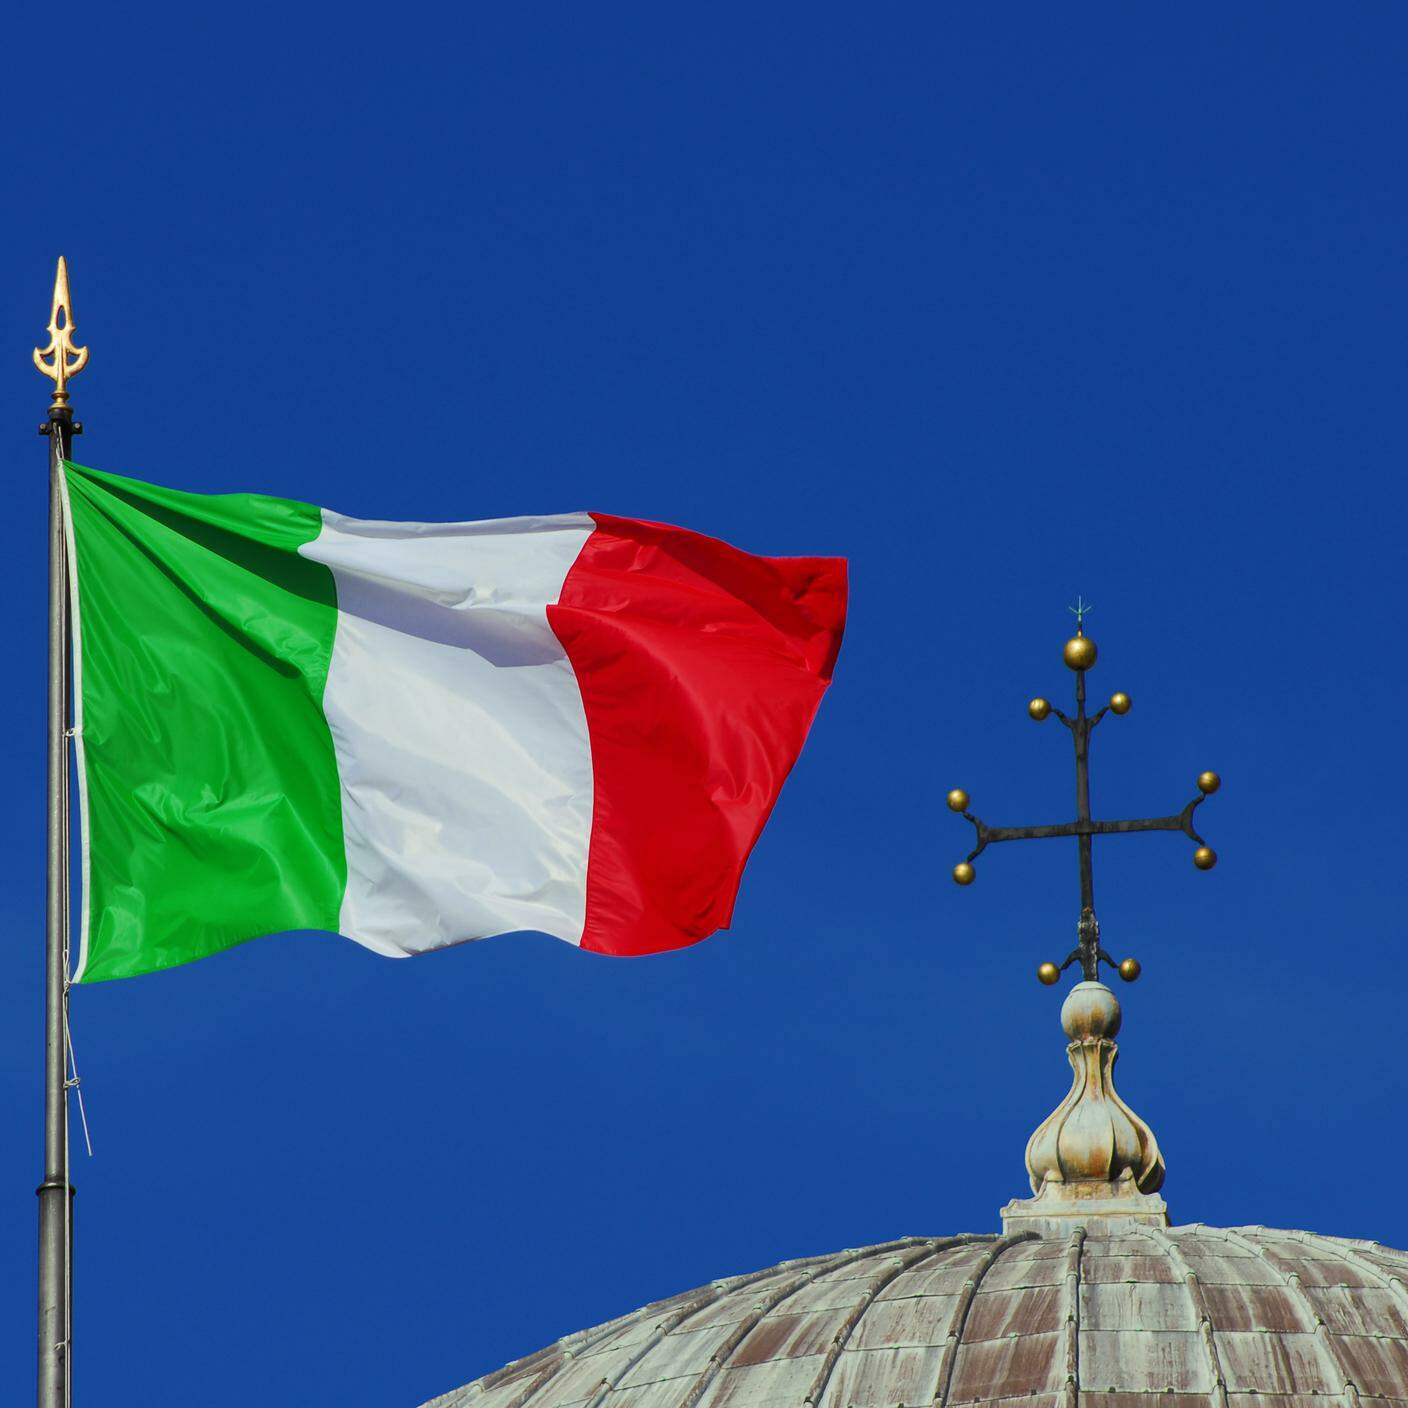 Bandiera Nazionale Italiana sventolante al vento vicino a un croce cristiana